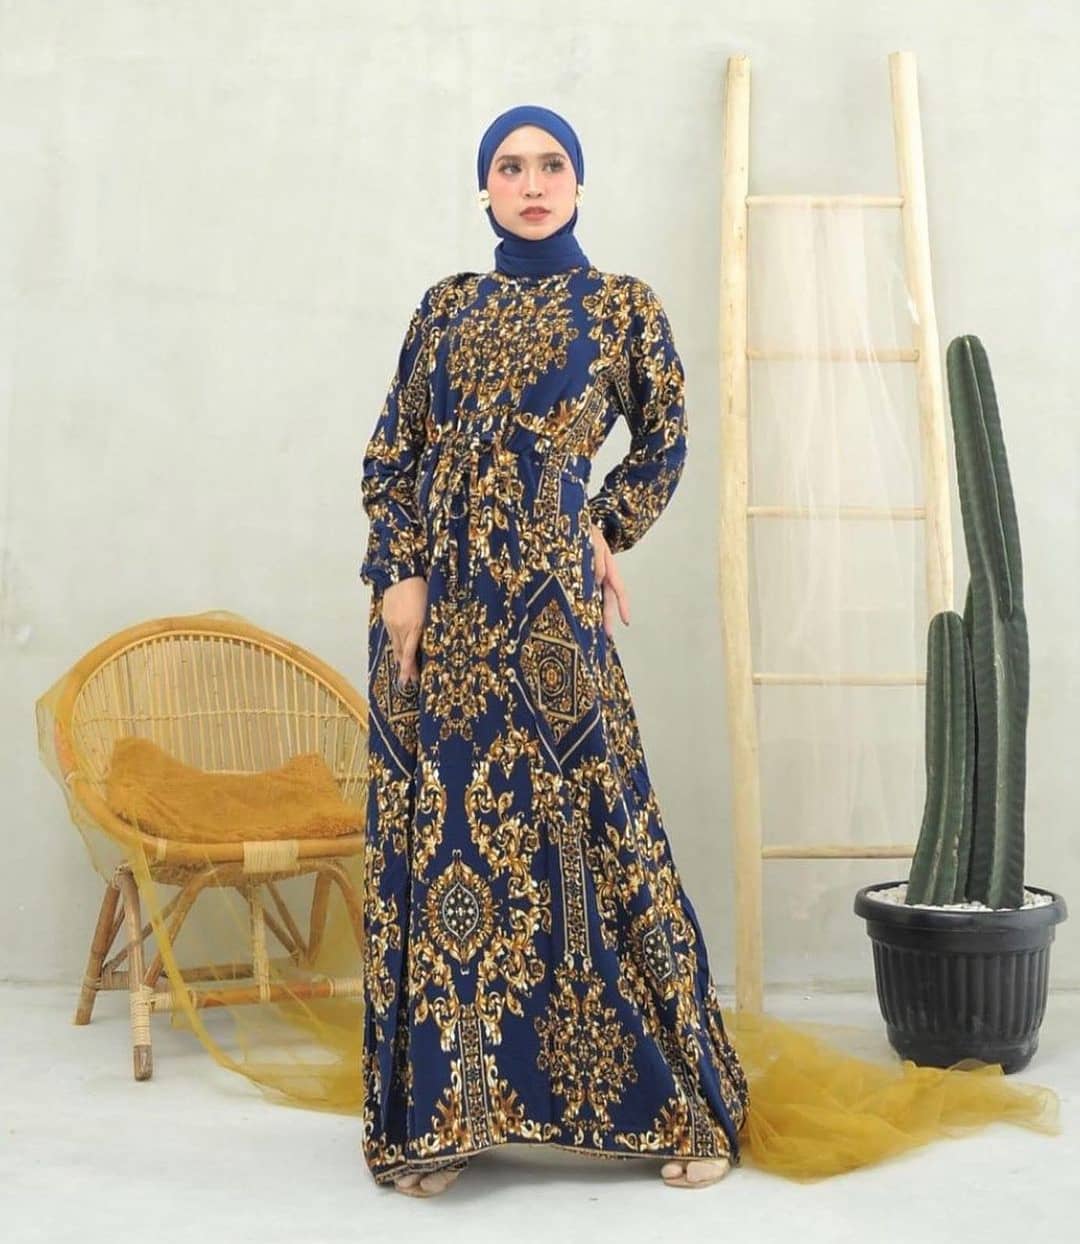 Baju Muslim Modern SULTAN DRESS MC Bahan VISCOSE CORAK Gamis Wanita Gamis Terbaru 2020 Remaja Modern Gamis Wanita Motif Murah Kekinian